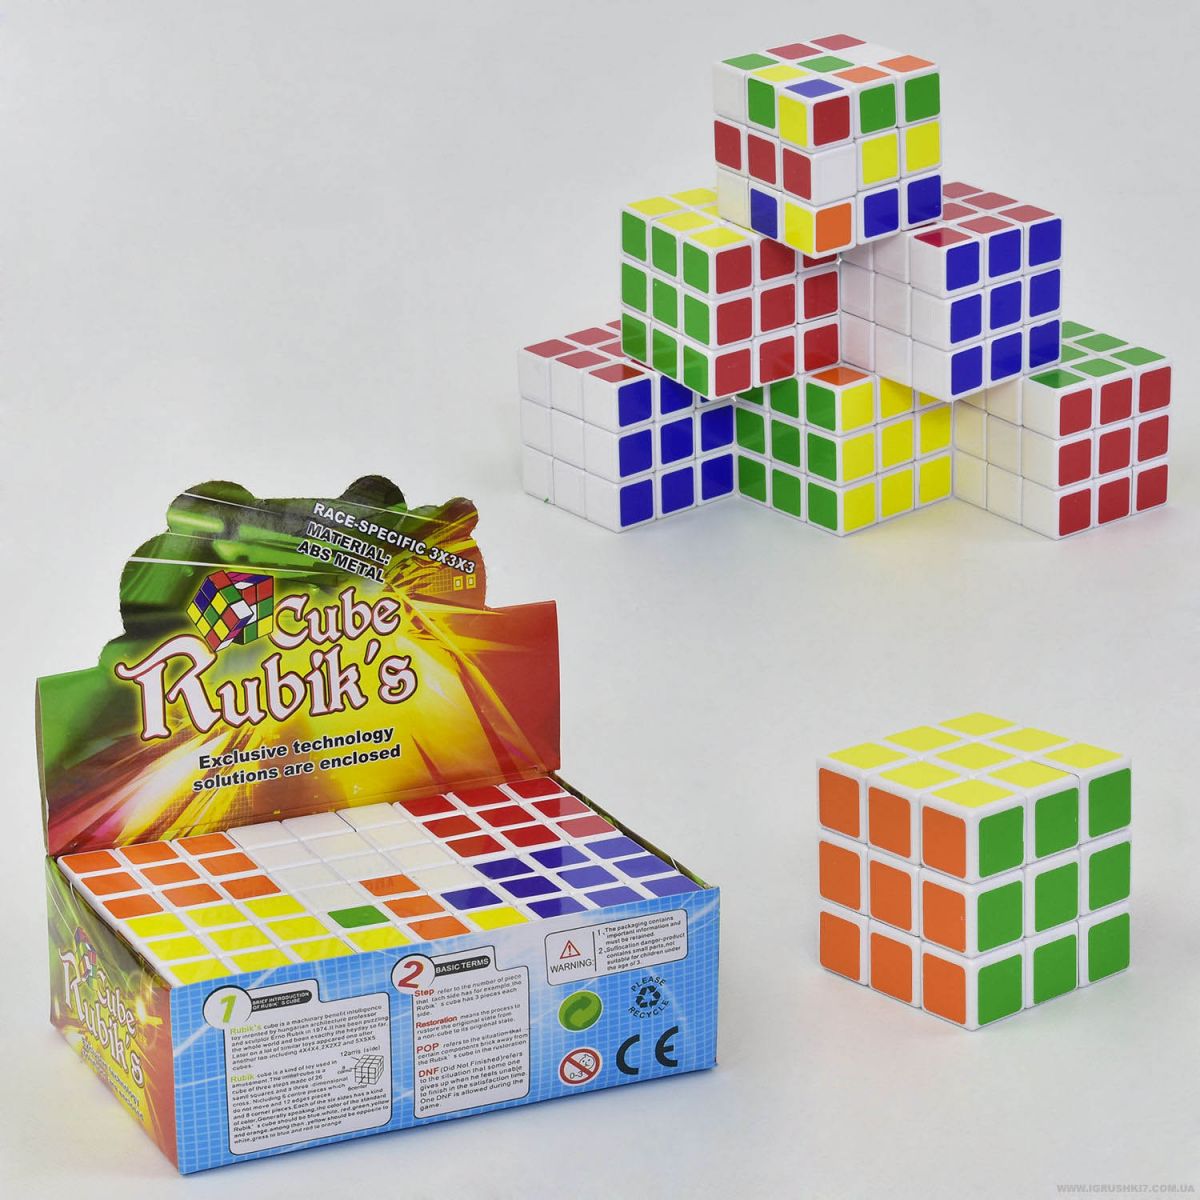 Кубик Рубика (3 х 3)